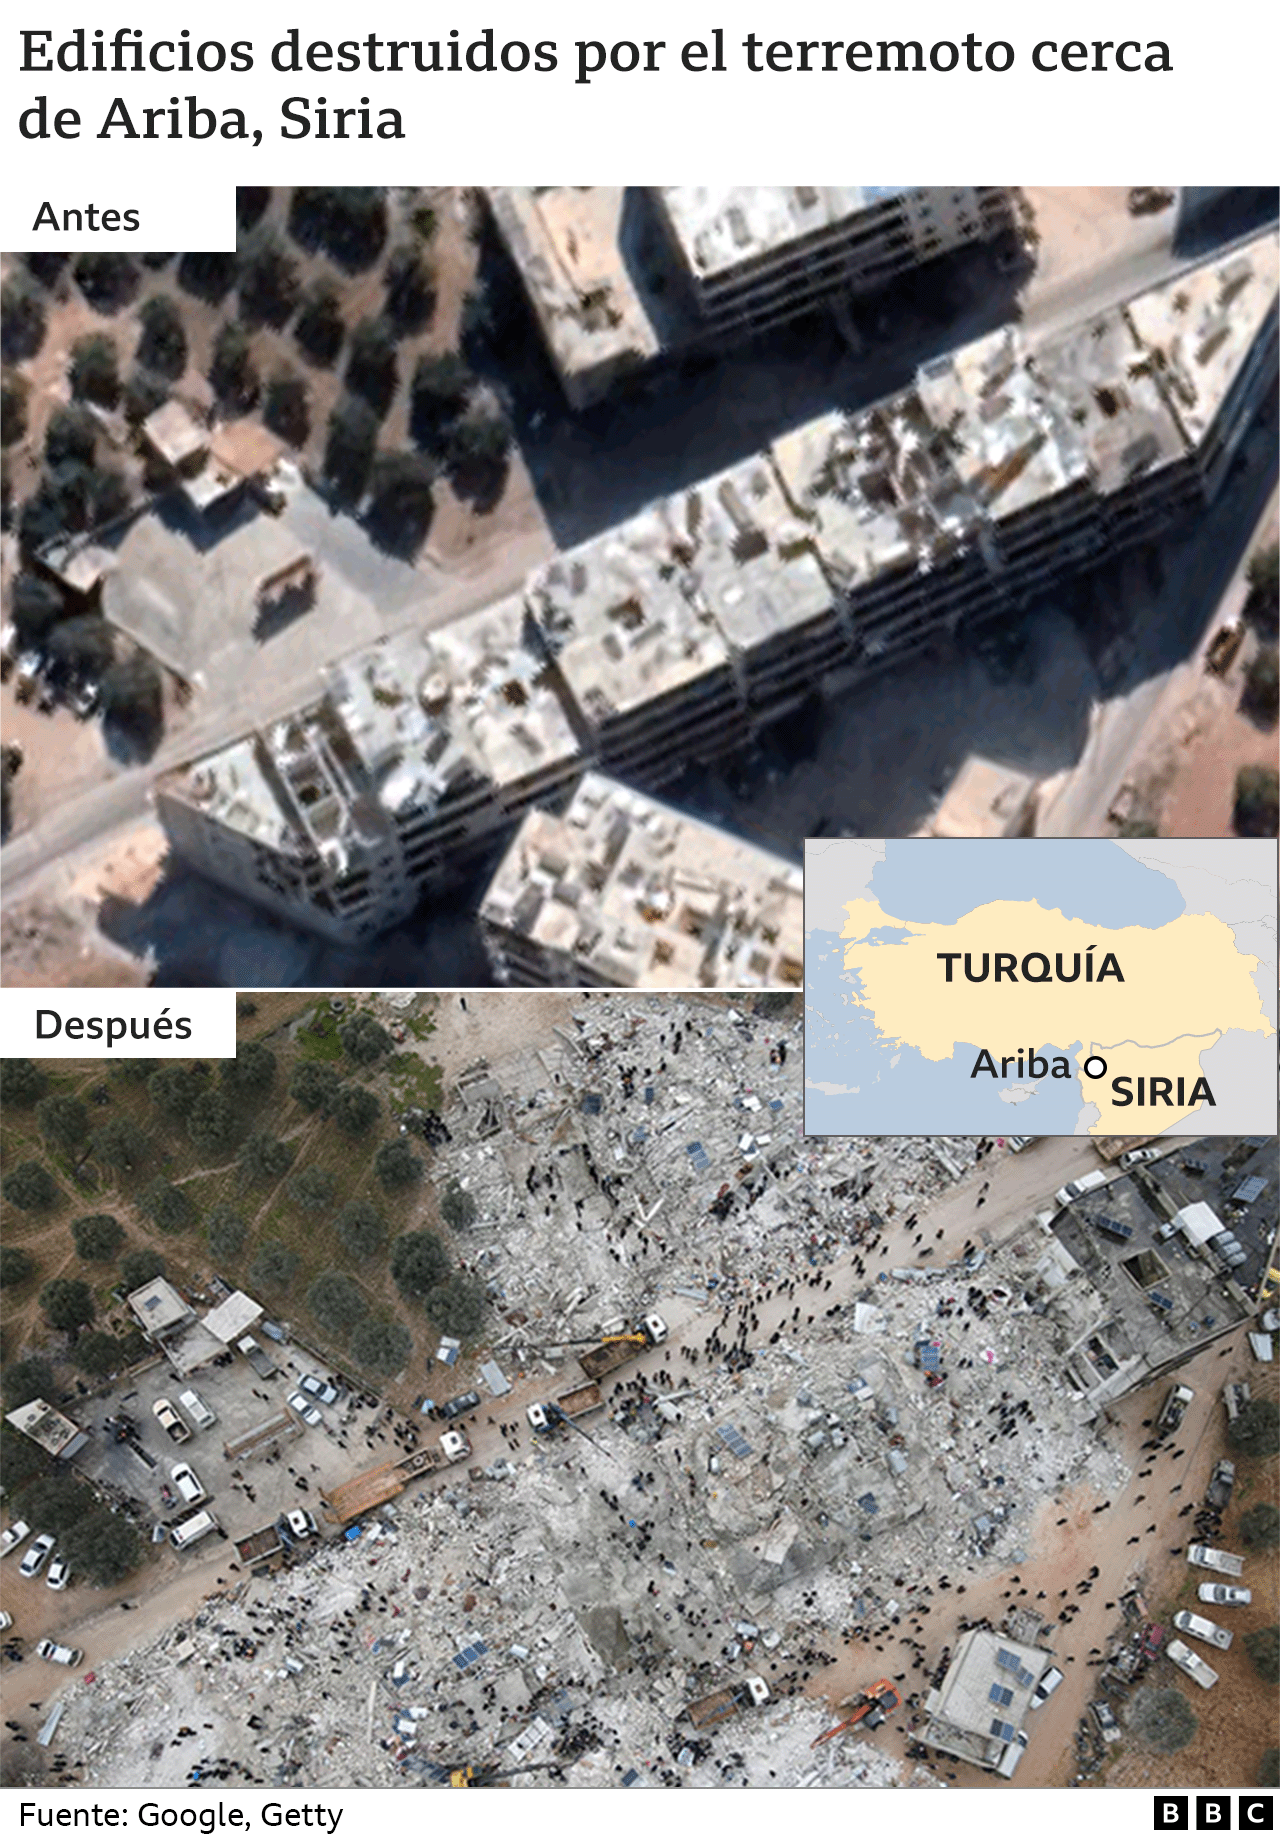 Destrucción en Ariba, Siria